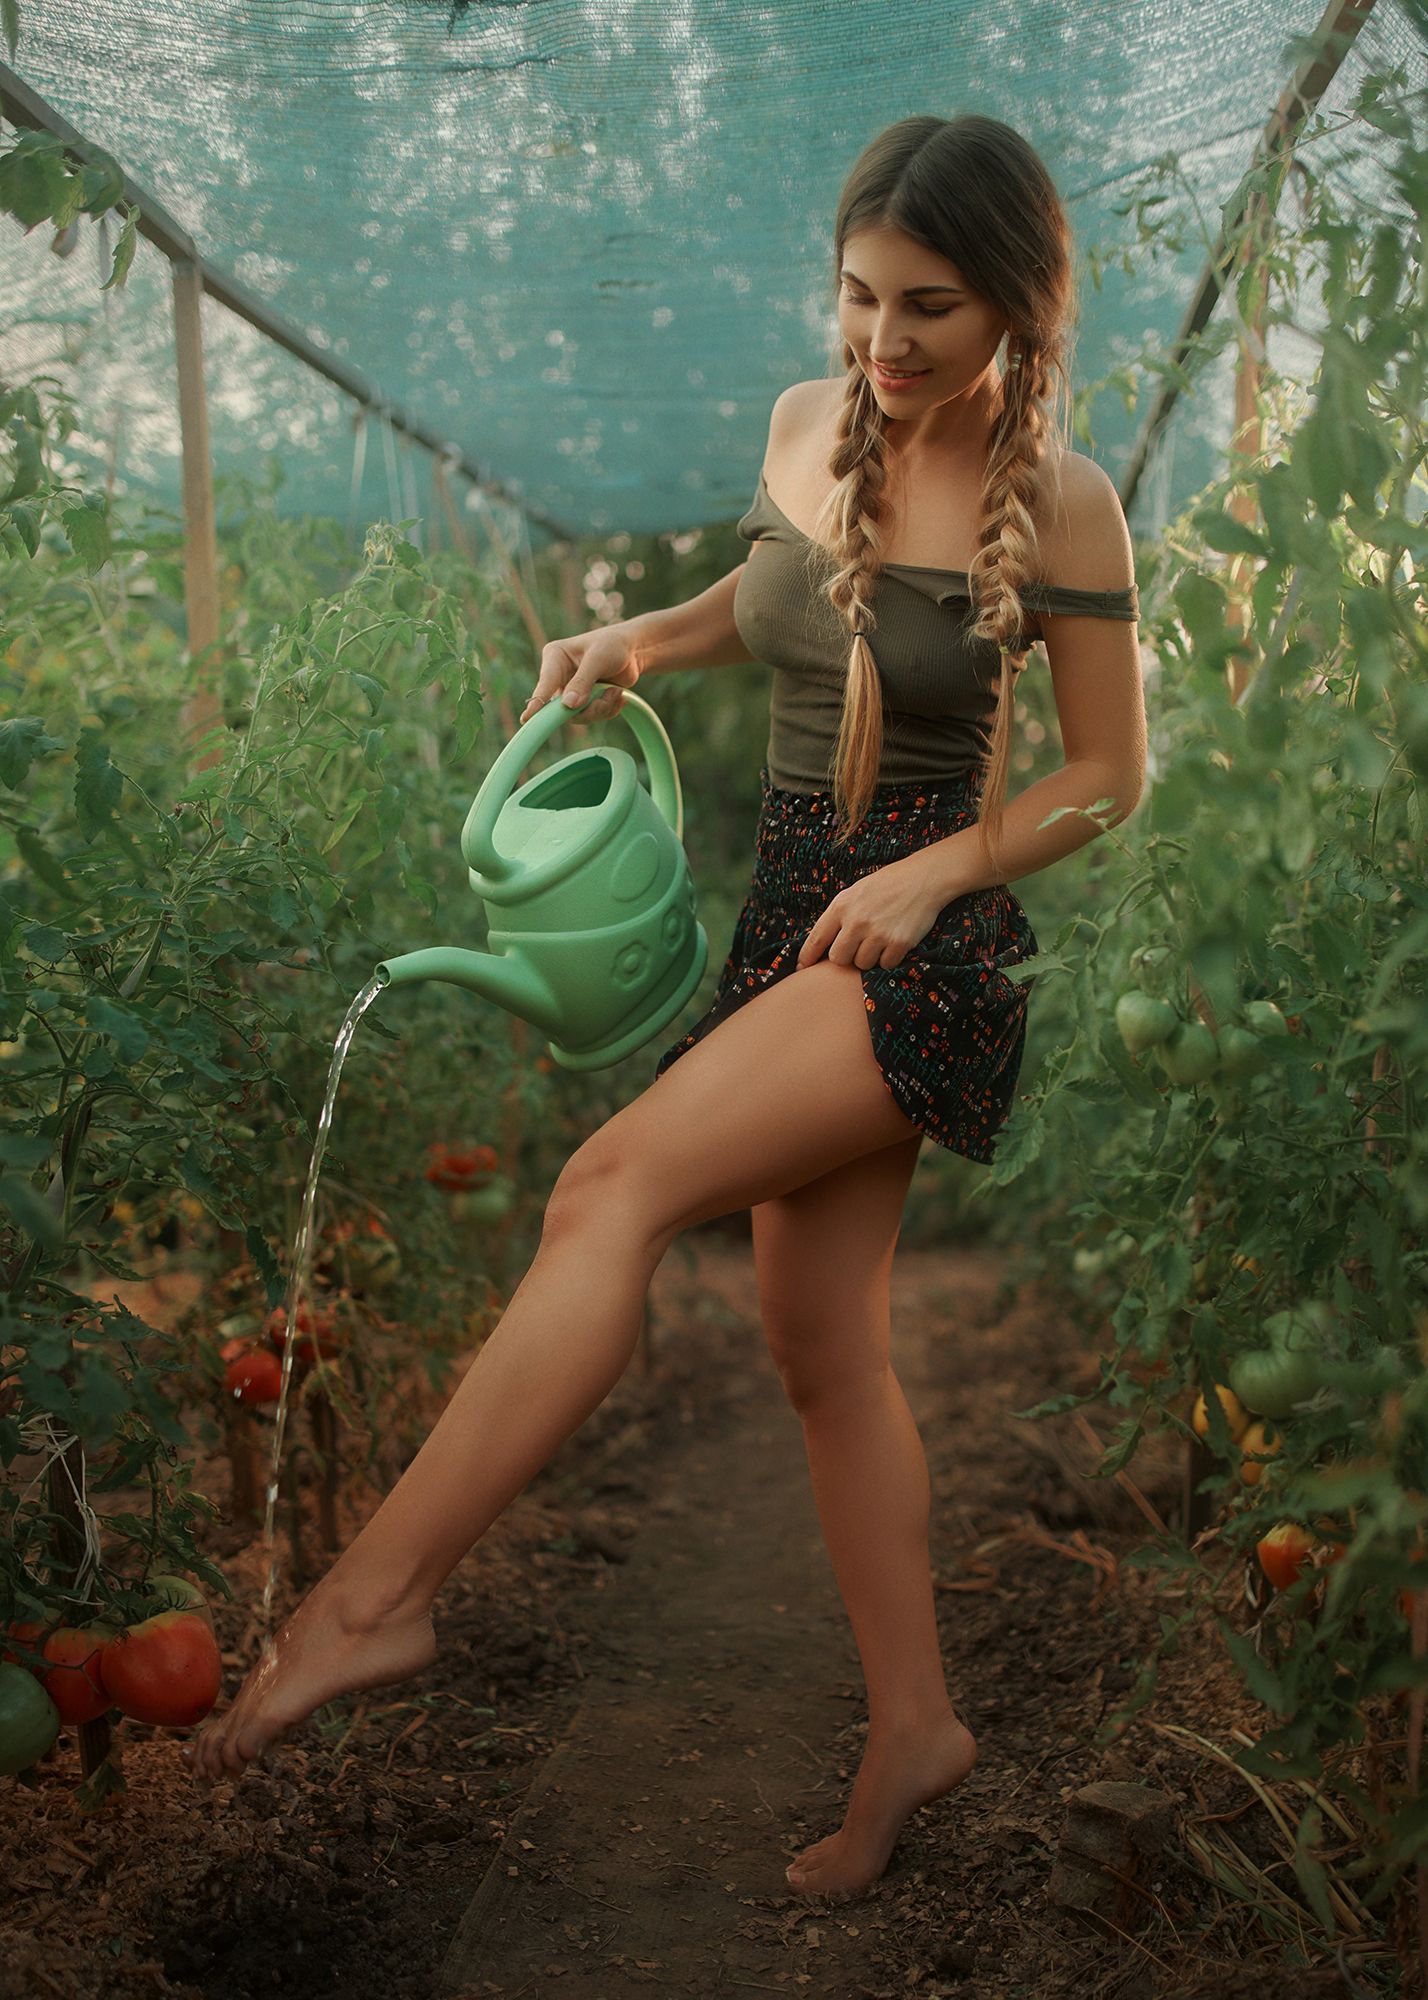 People 1428x2000 Nick Kashuba model wet body garden barefoot legs lifting skirt tomatoes portrait display